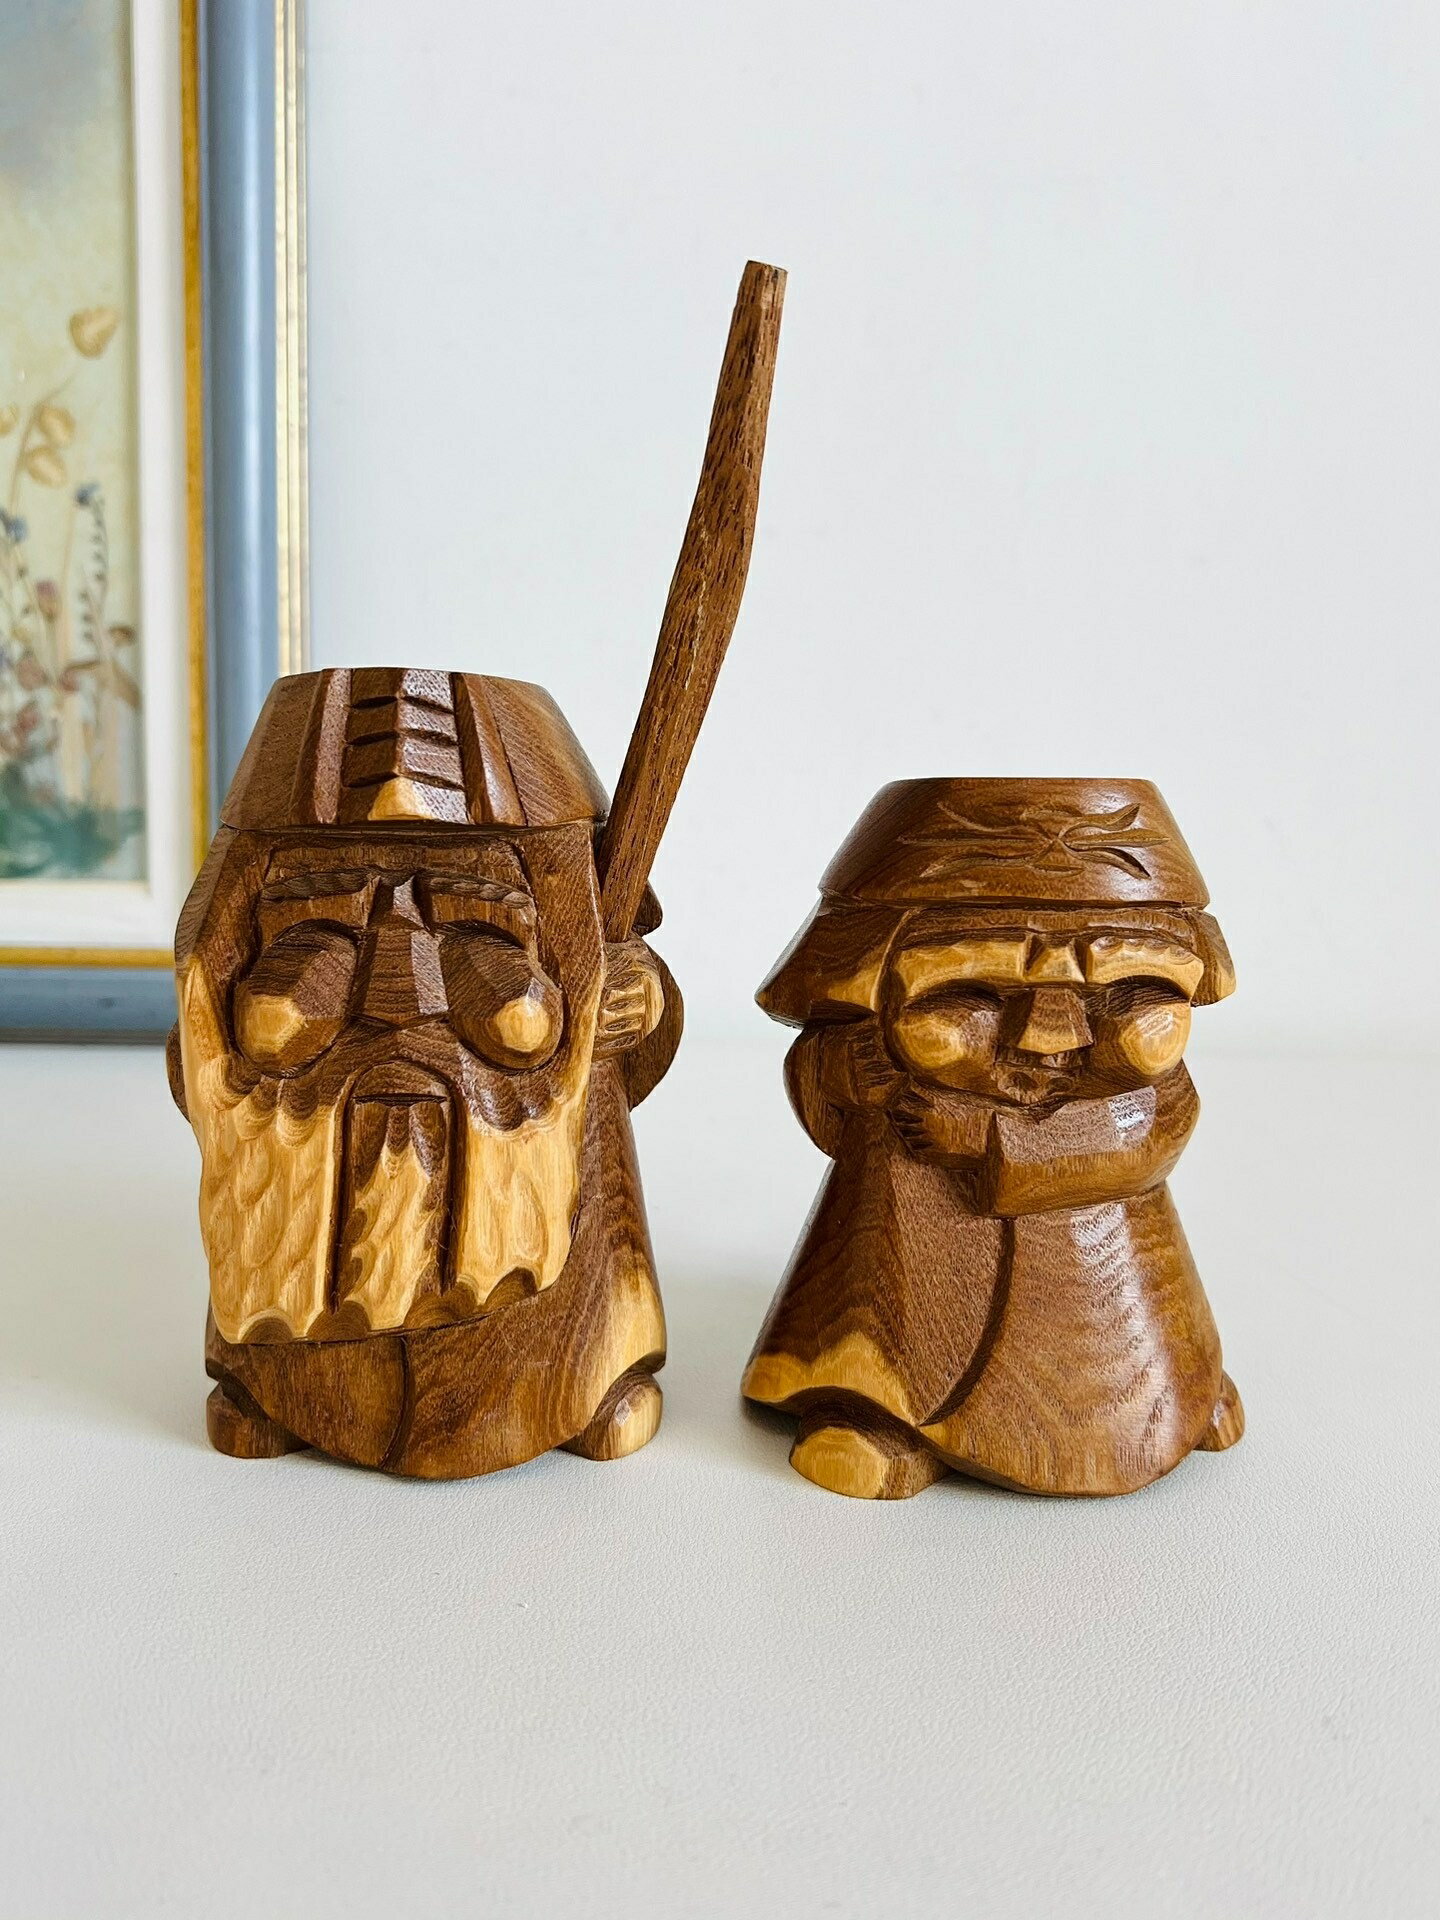 一對的價格日本昭和 鄉土玩具 木雕可愛版阿伊努人木偶置物擺飾